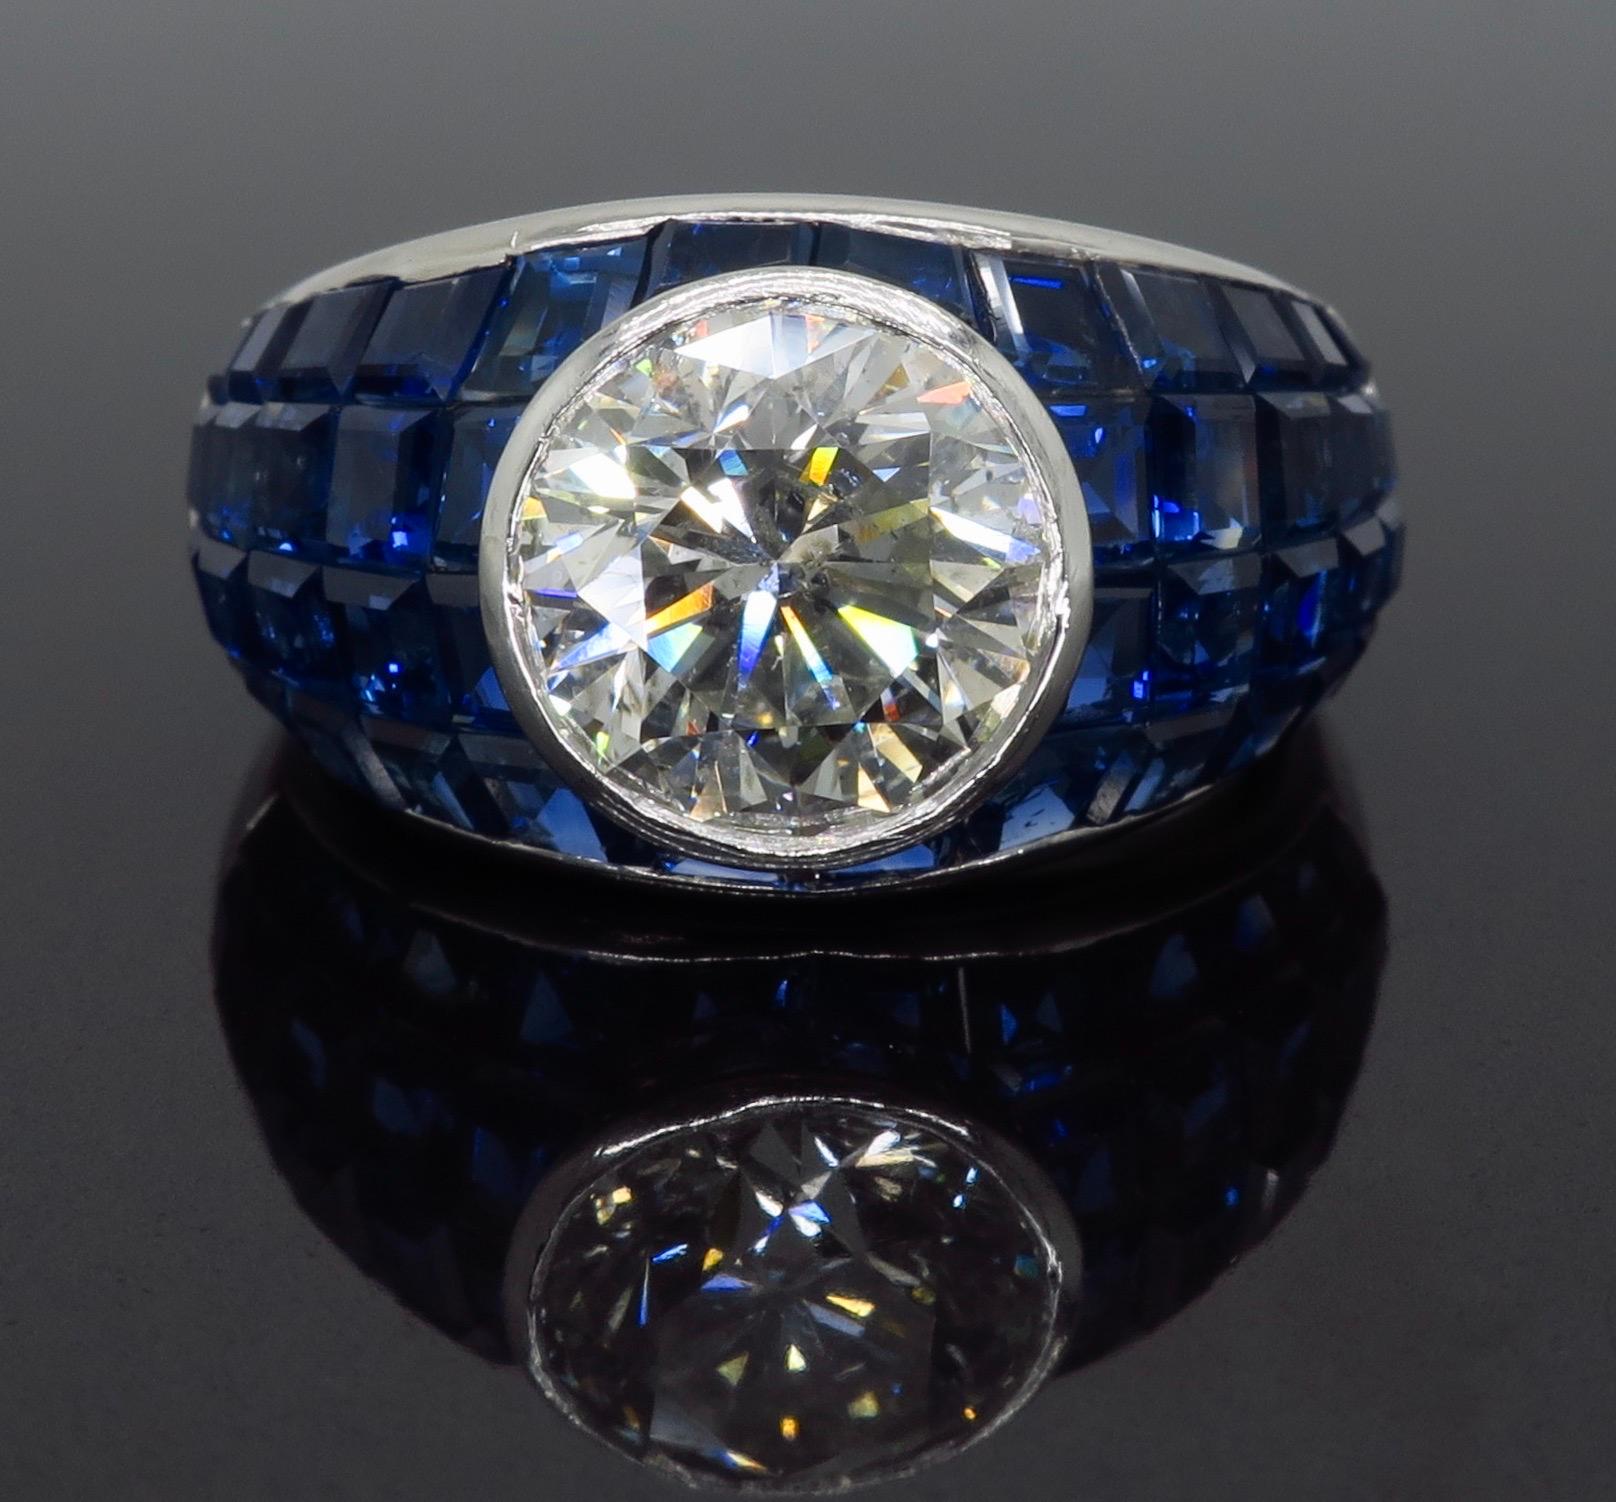 Vintage ca. 2,62CT Round Brilliant Cut Diamantring mit blauen Saphiren in einem Mosaik-Design in Platin gefertigt gesetzt

Edelstein: Diamant und Saphir
Größe der Edelsteine: Unregelmäßig geschliffene blaue Saphire mit einer Größe von etwa 2,00-2,4